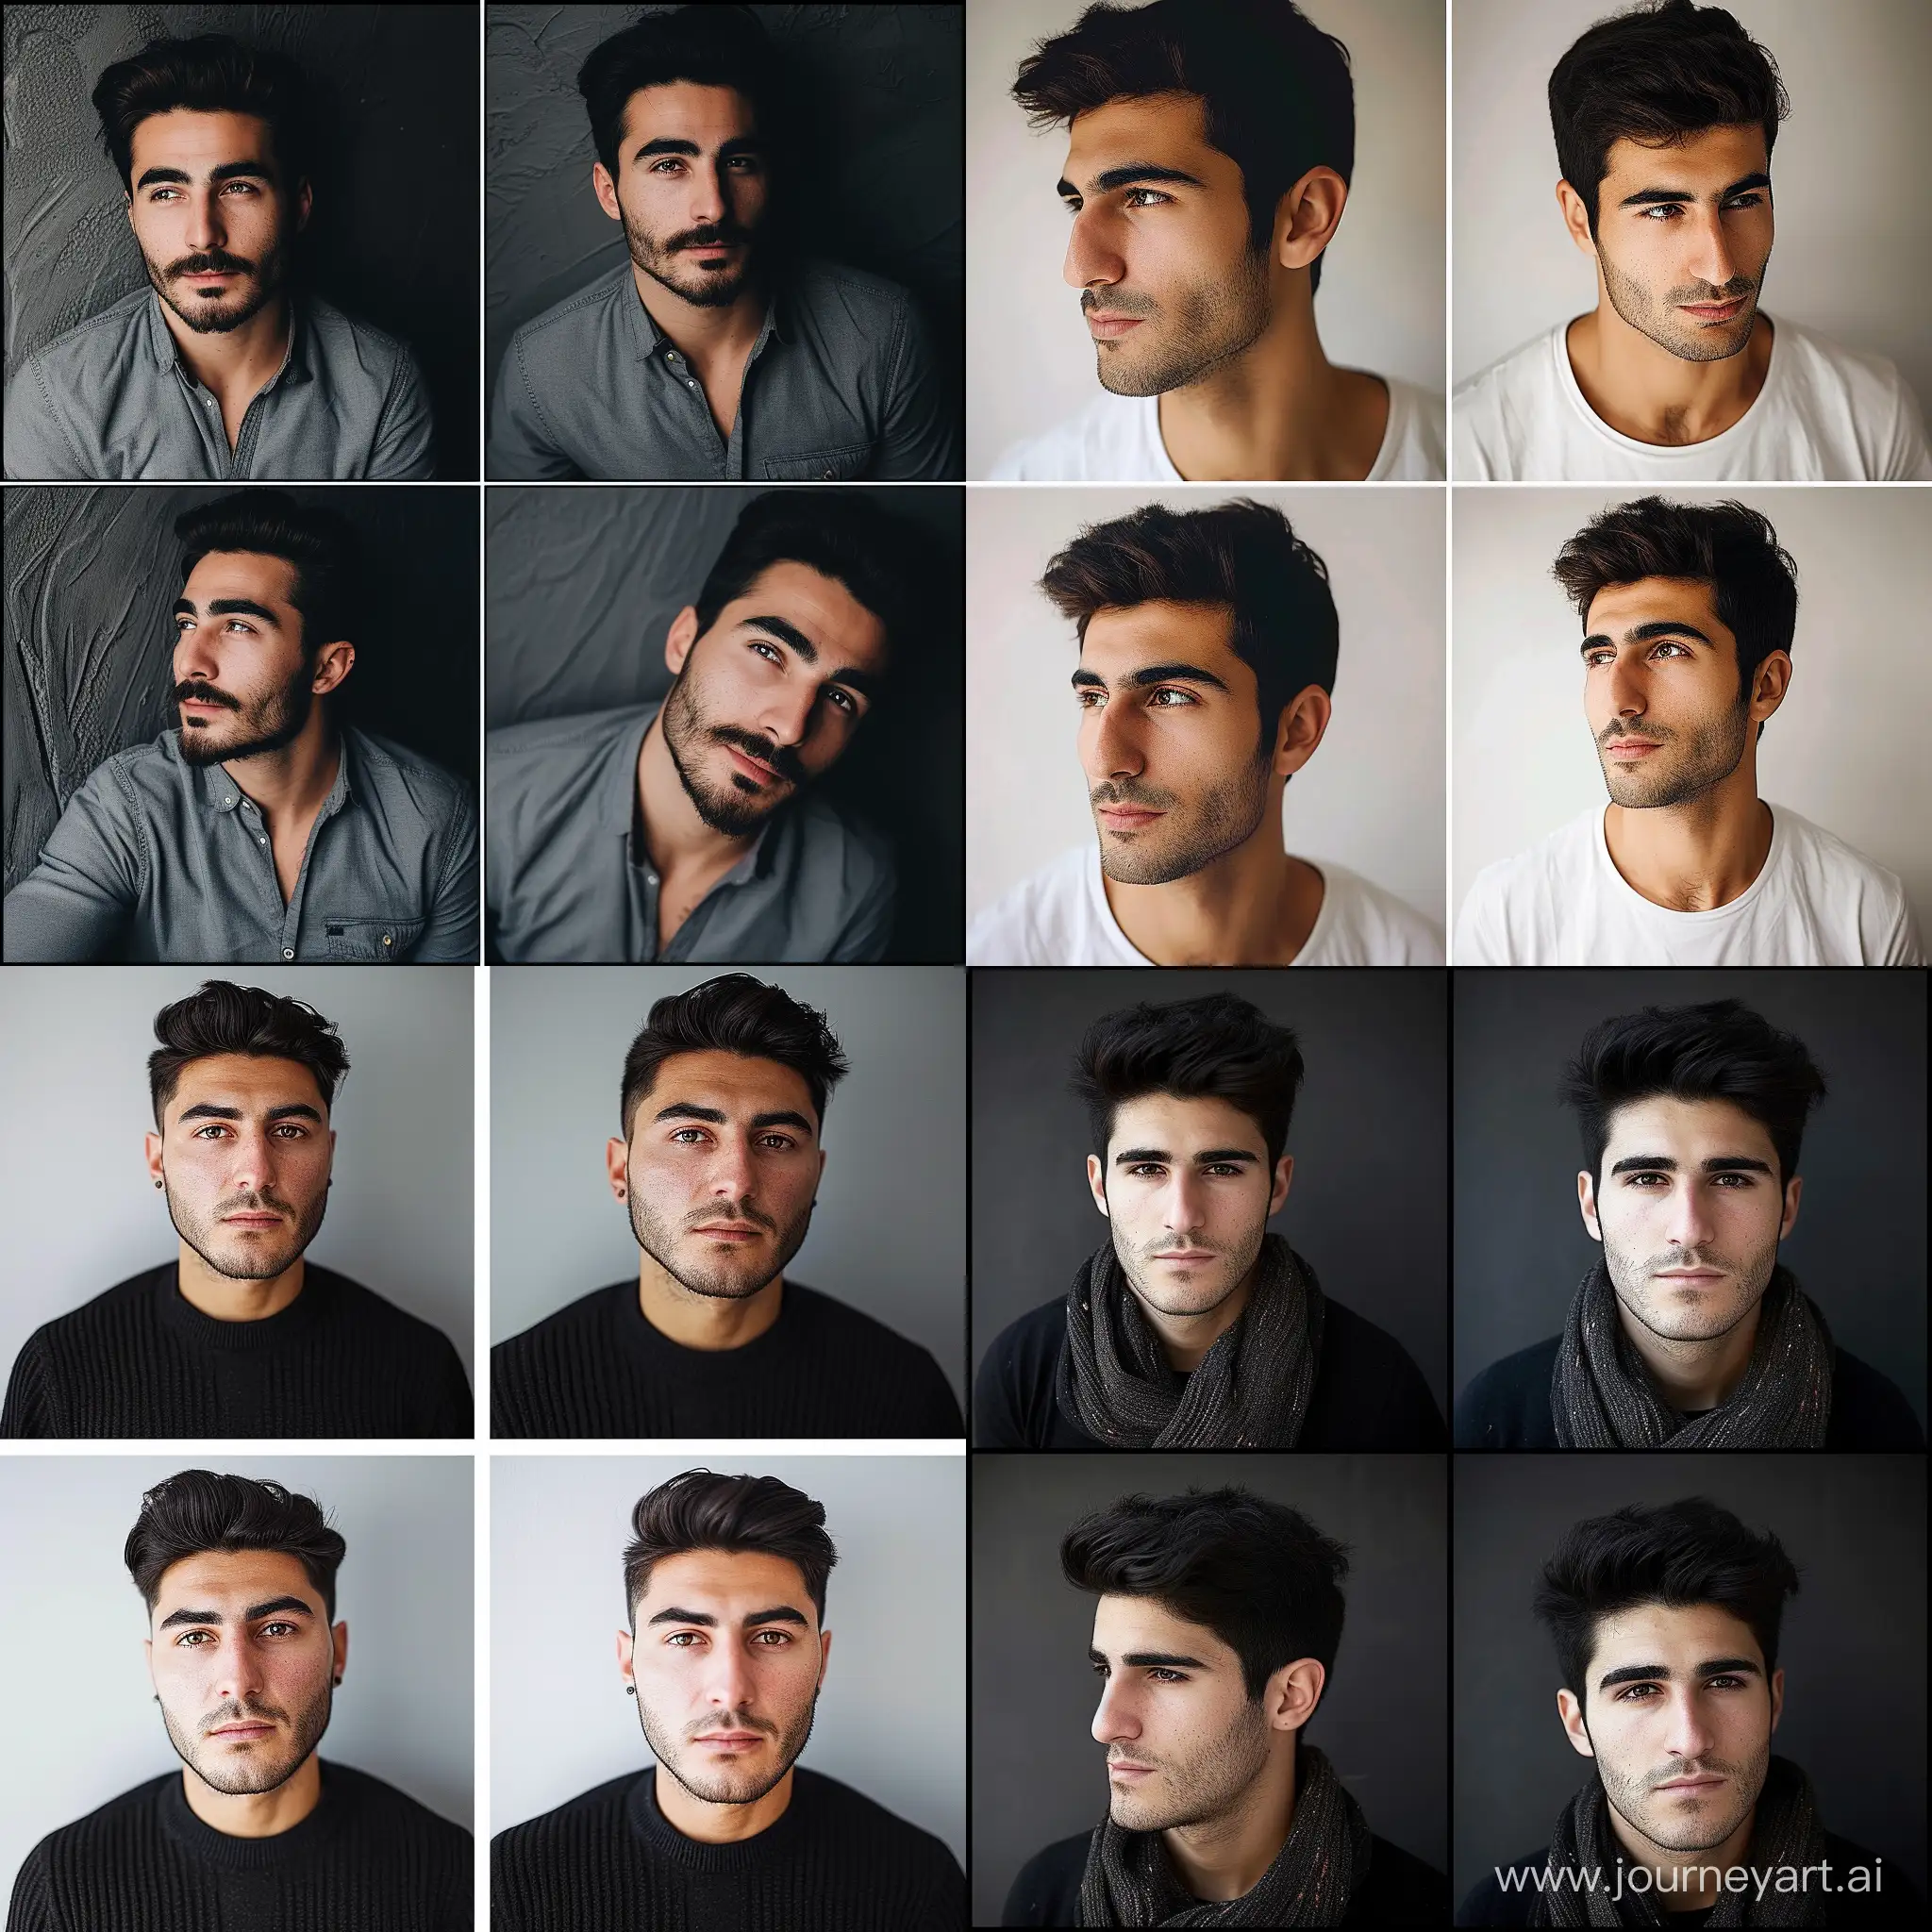 Армянский мужчина 27 лет,красивый,4 разные фото с разных ракурсов одного и того же человека 